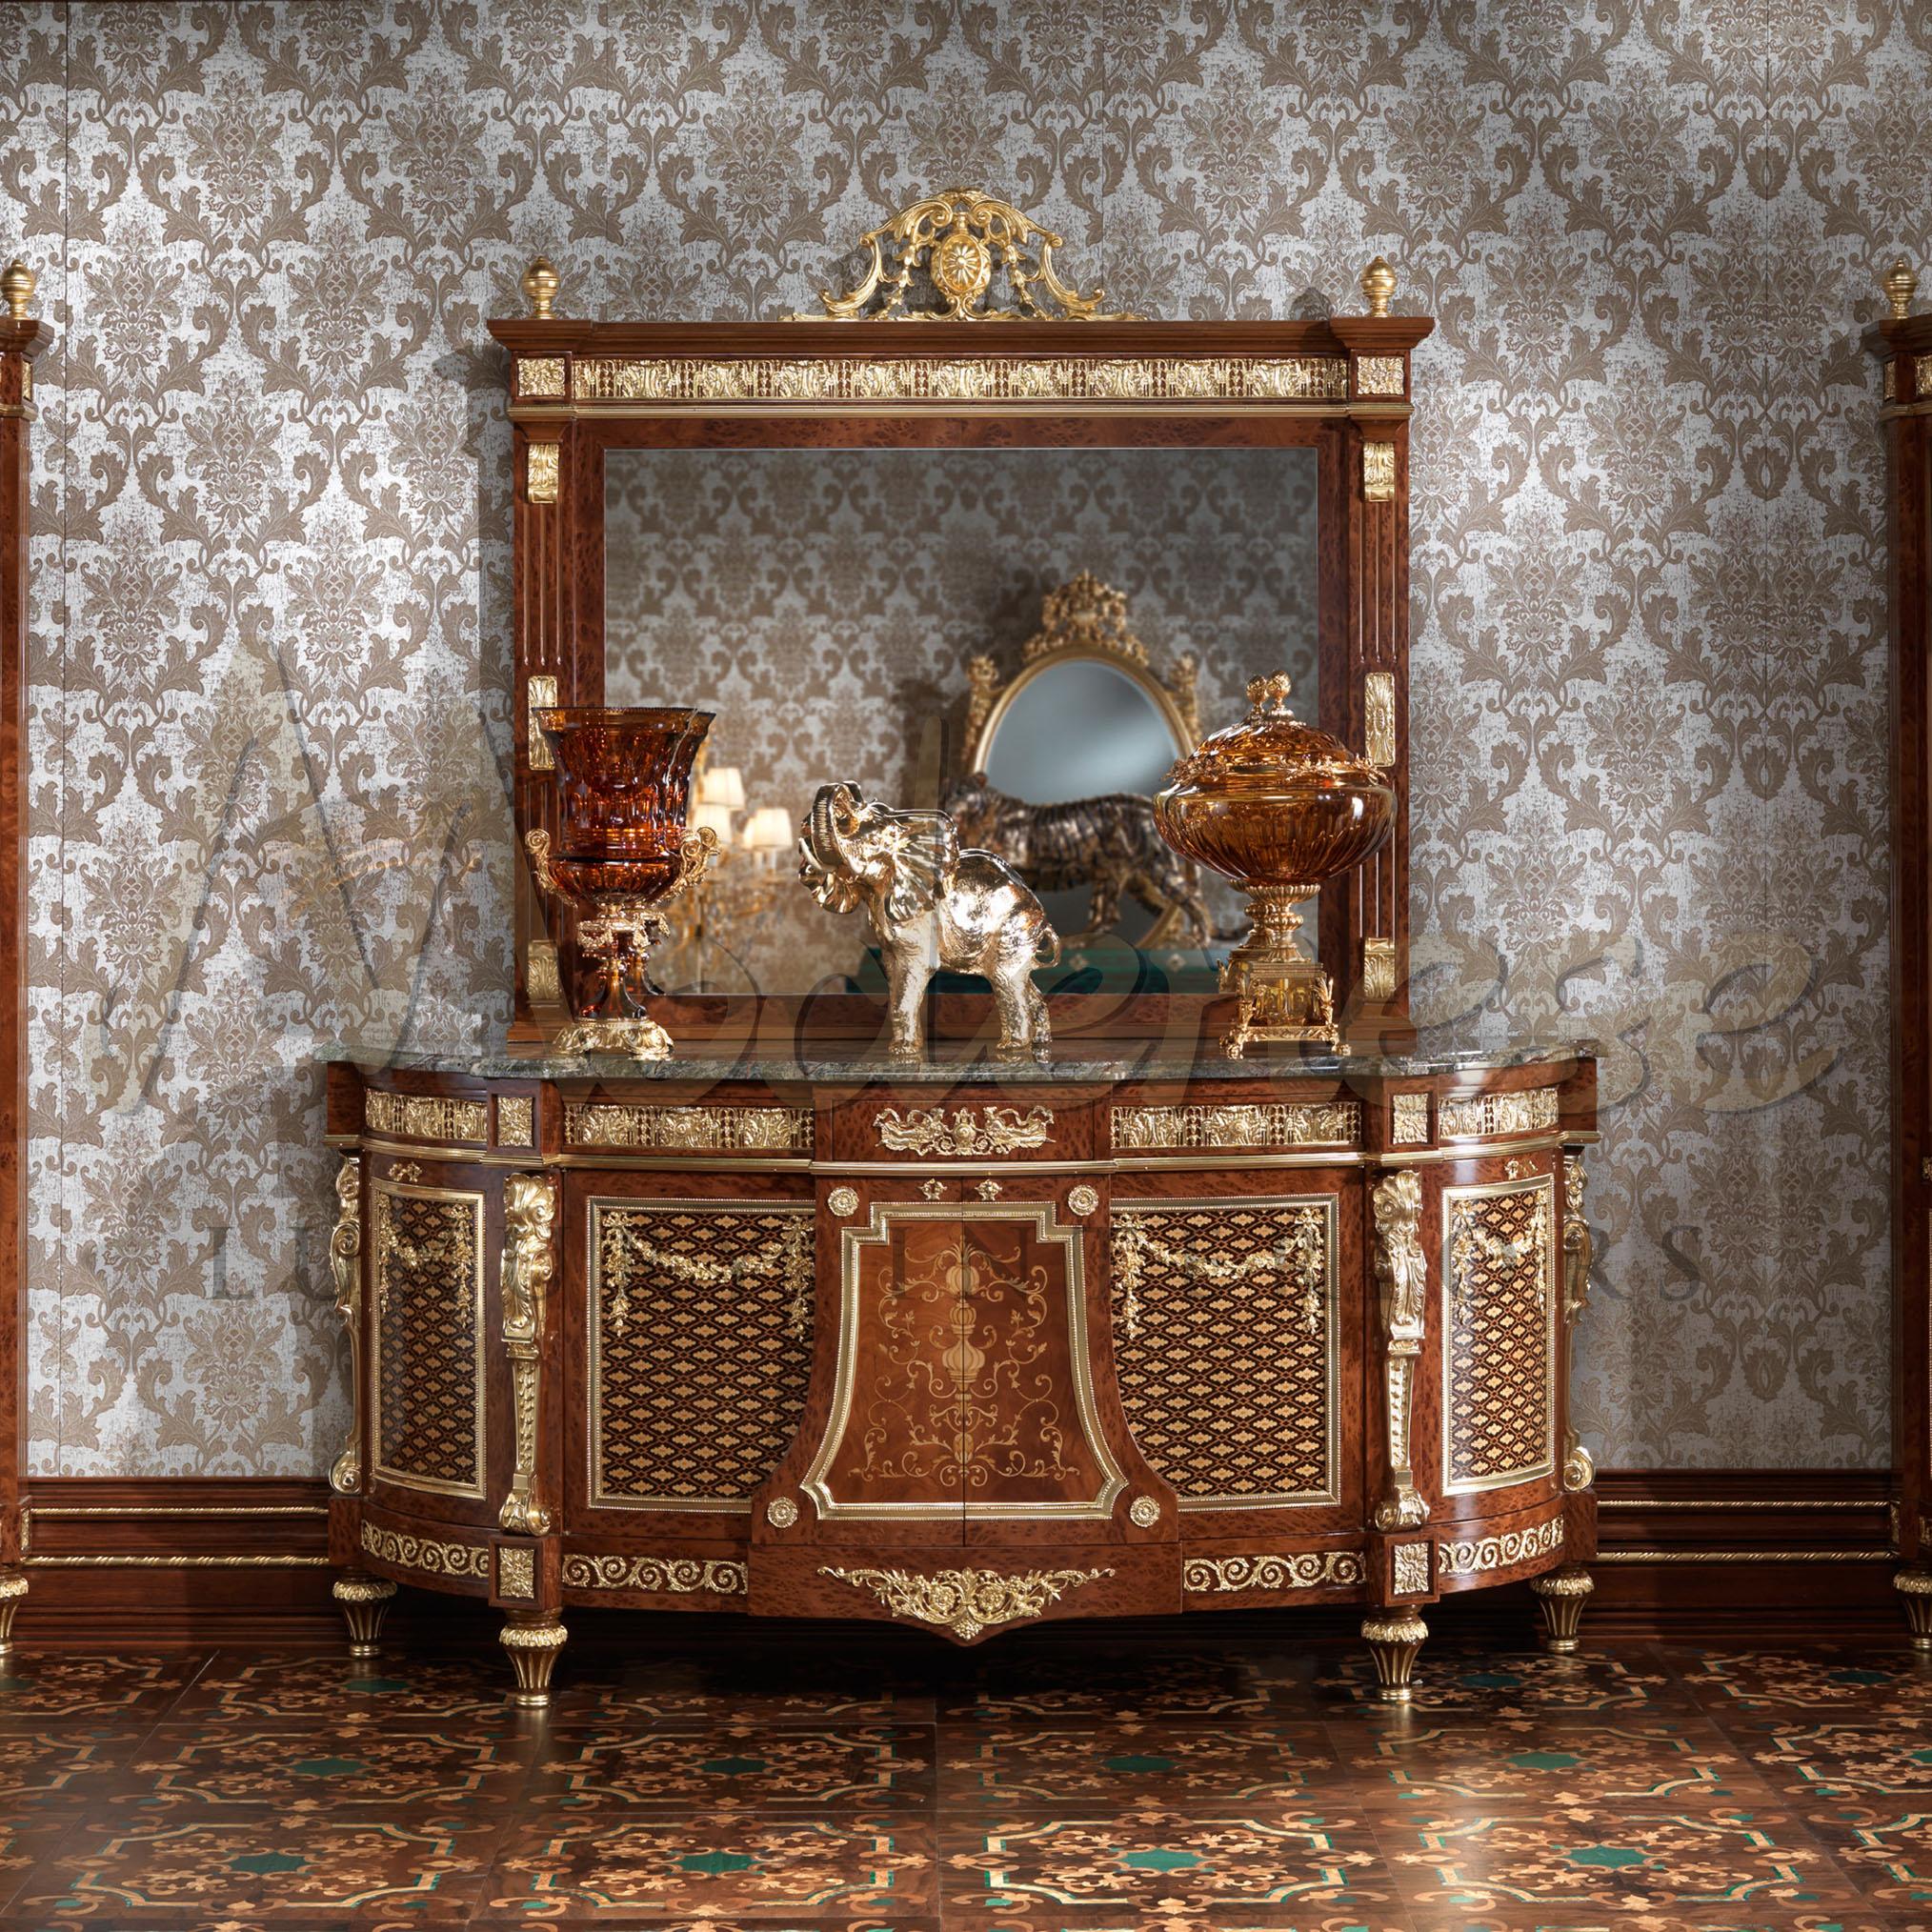 Dieser exquisite Klassiker repräsentiert die beste Qualität der luxuriösen italienischen Handwerkskunst. Unser klassisches barockes Beistelltischchen aus Massivholz, veredelt mit Bruyereplatten, handgefertigten Intarsien, einer Platte aus grünem